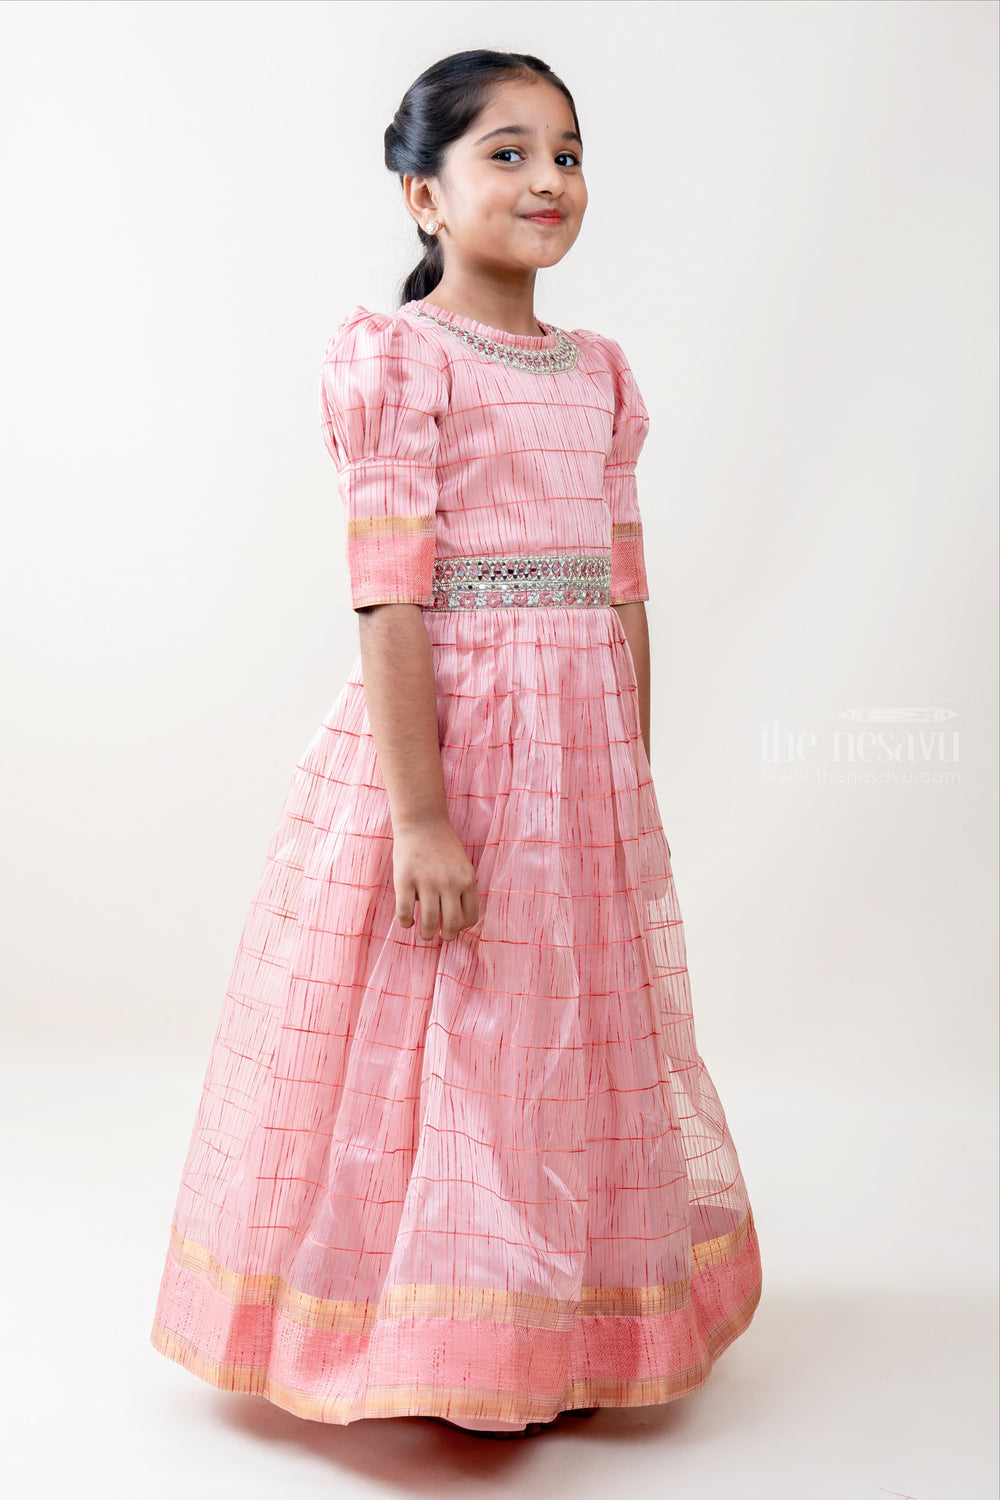 The Nesavu Kids Anarkali Full Length Silk Cotton Designer Anarkali Dresses For Baby Girls psr silks Nesavu